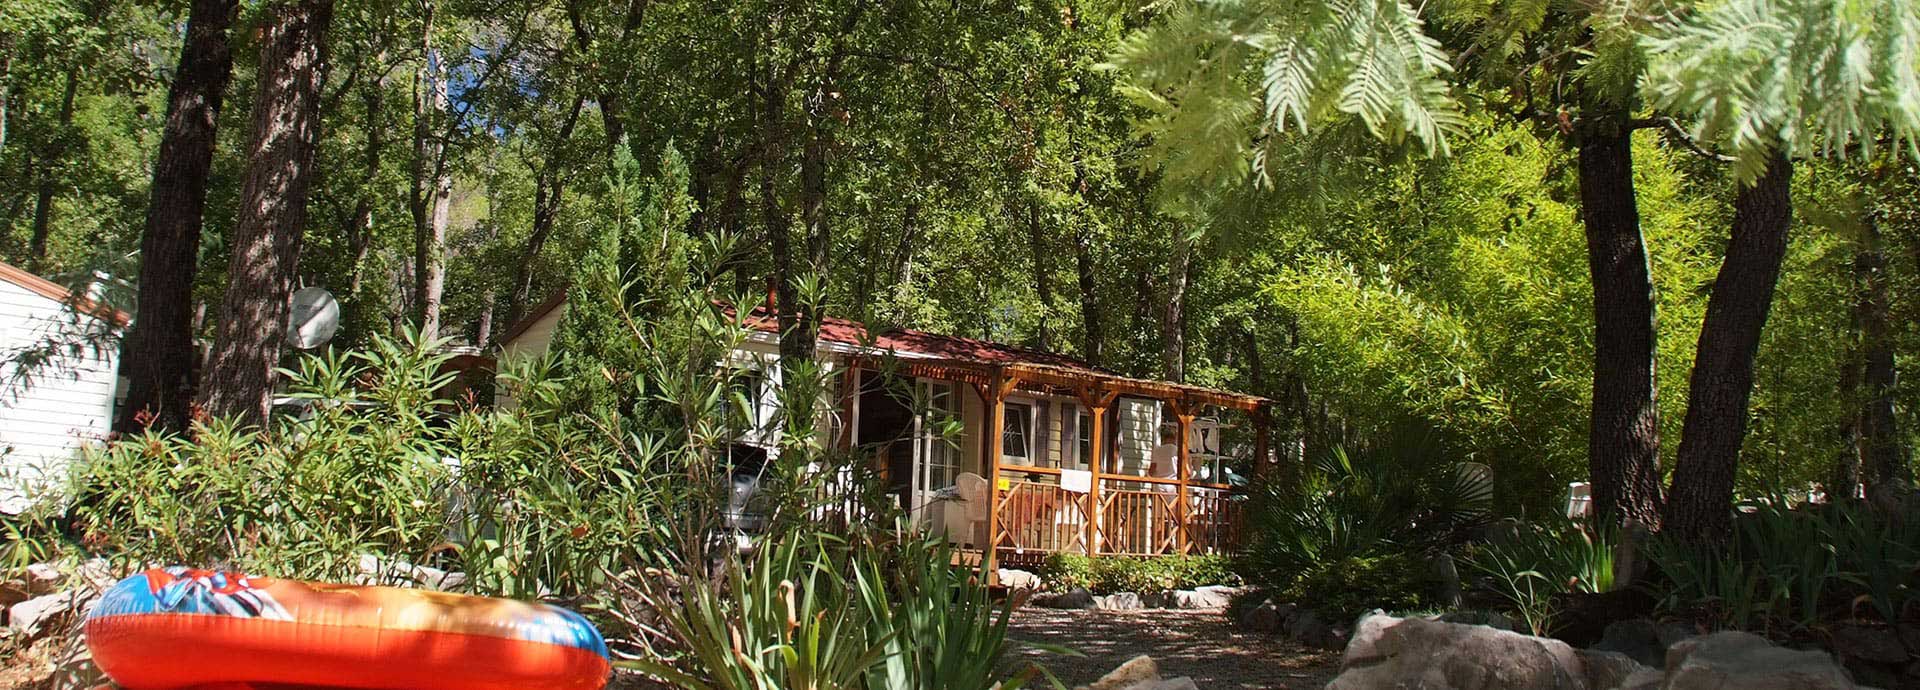 Mieten Sie ein Wohnmobil im Departement Var auf dem 4-Sterne-Campingplatz Le Parc im Hinterland von Fréjus